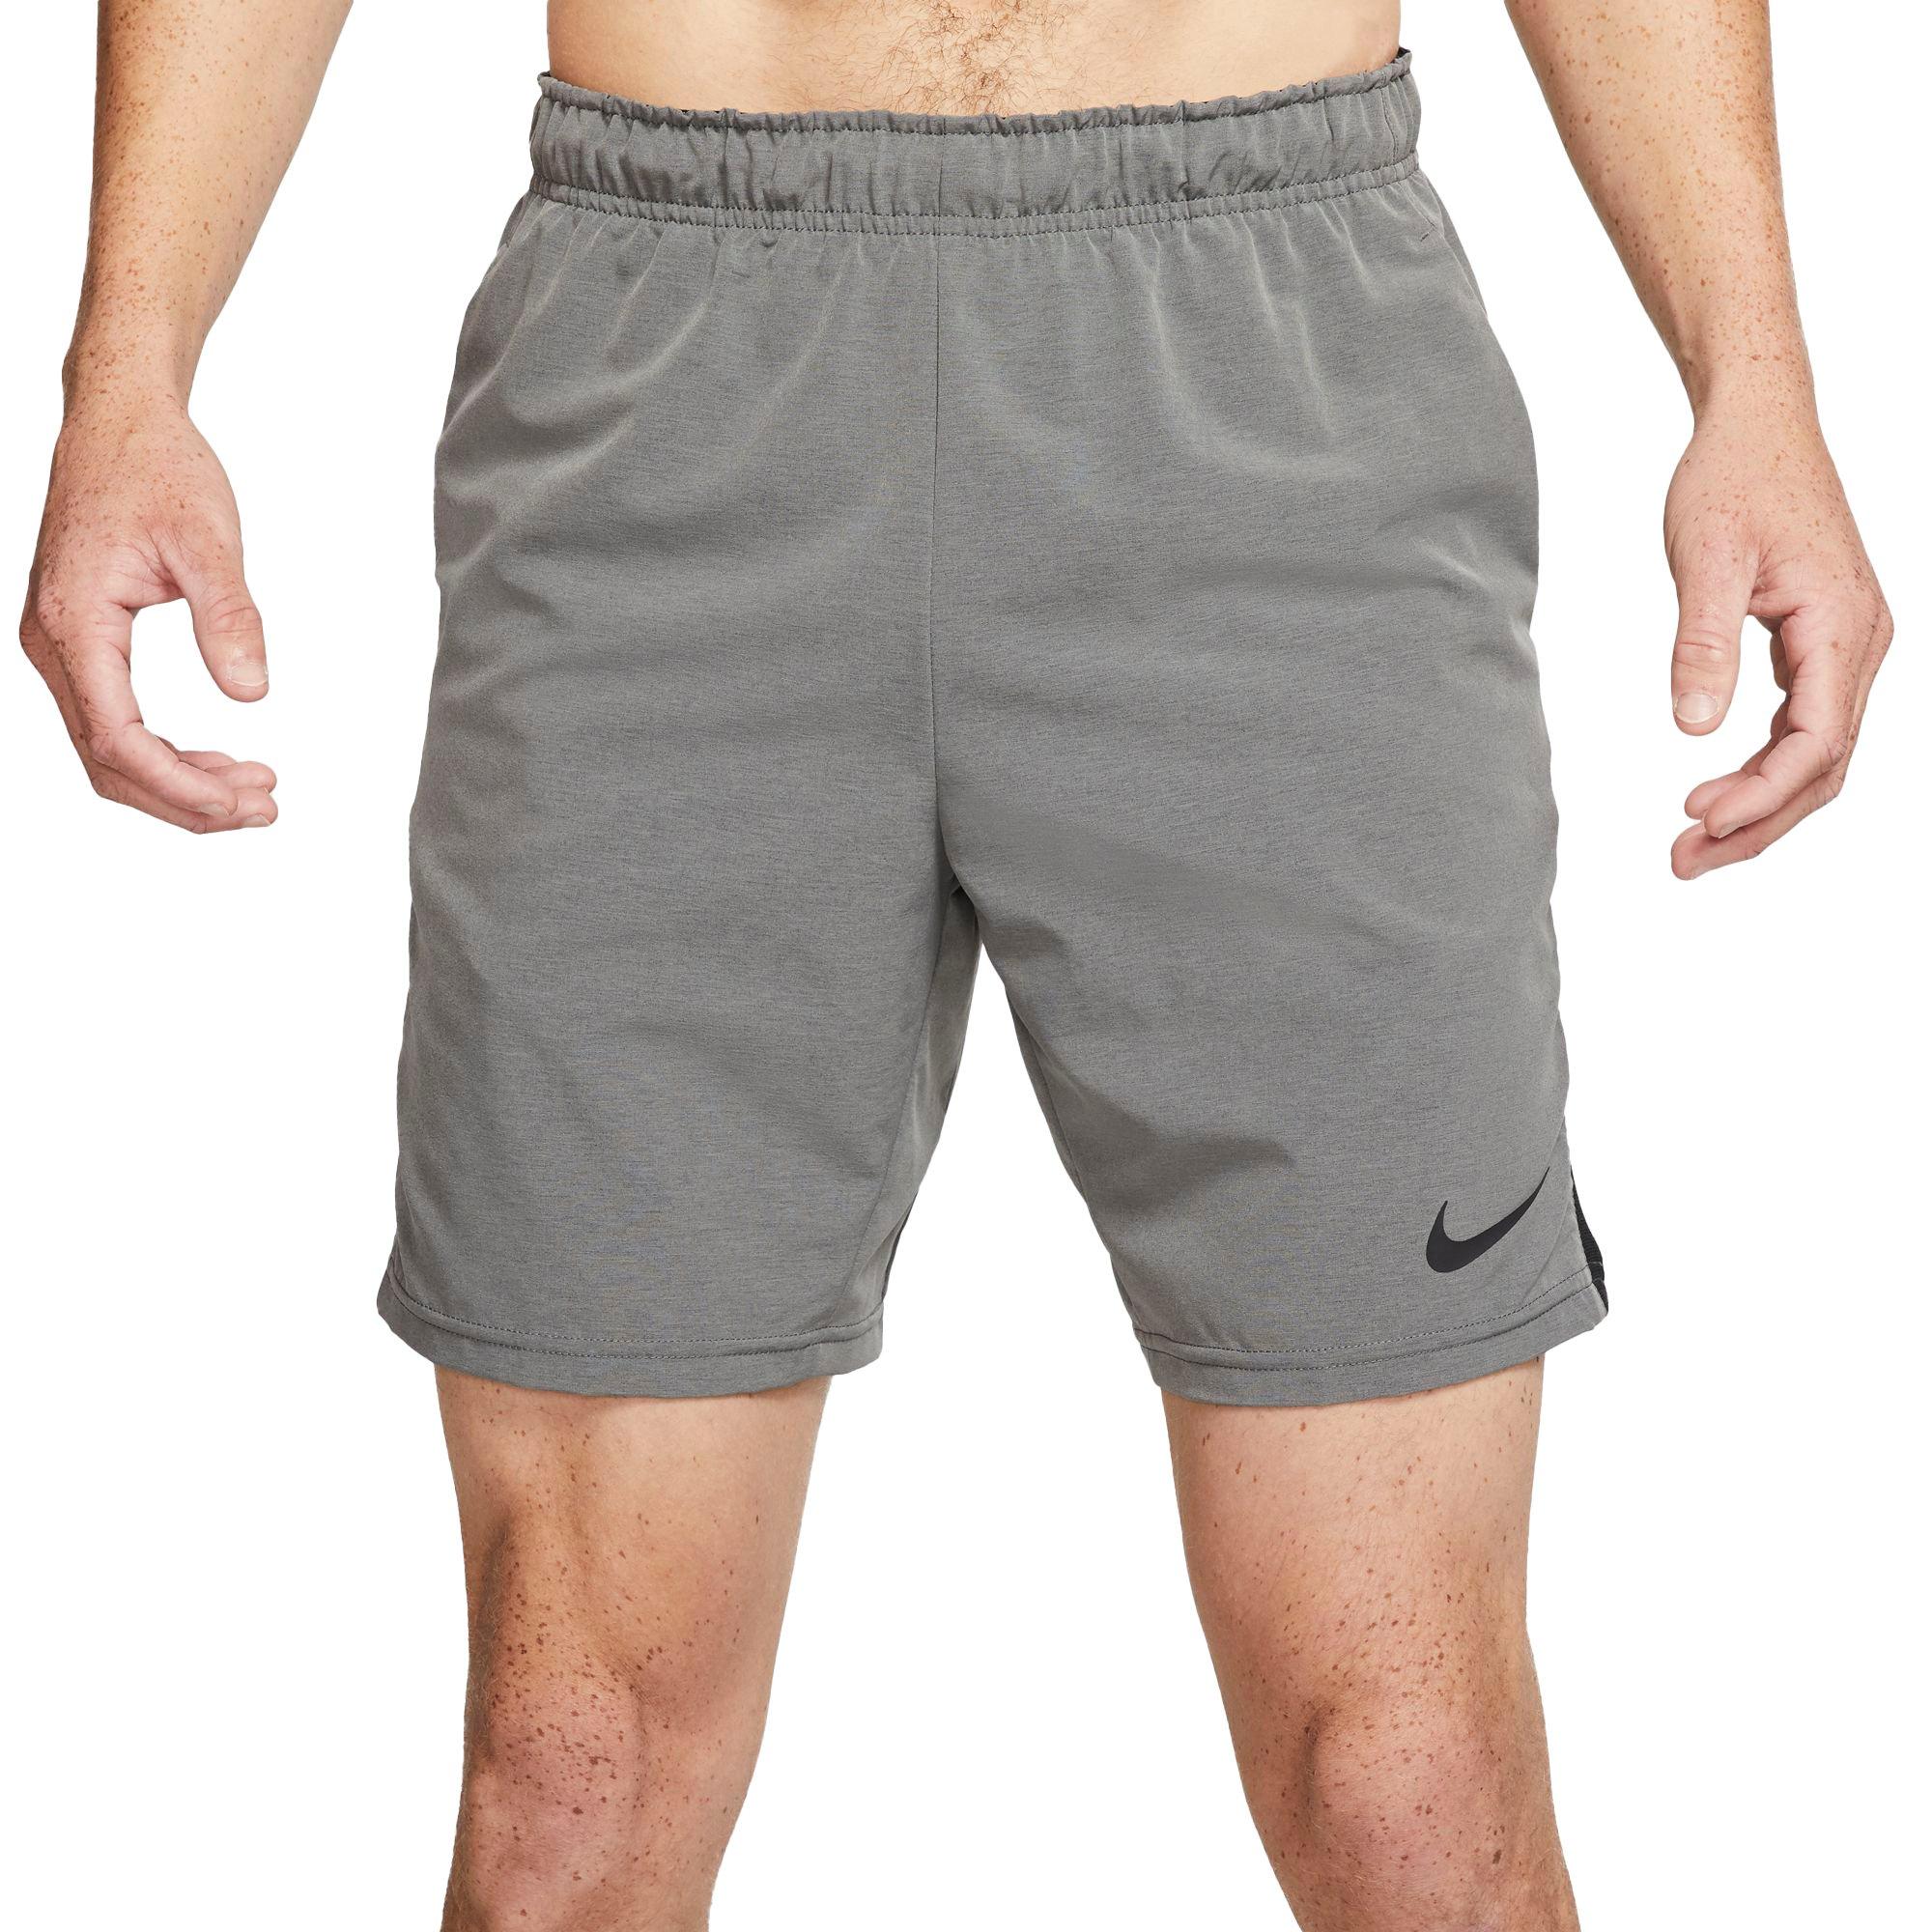 nike flex shorts 8 inch